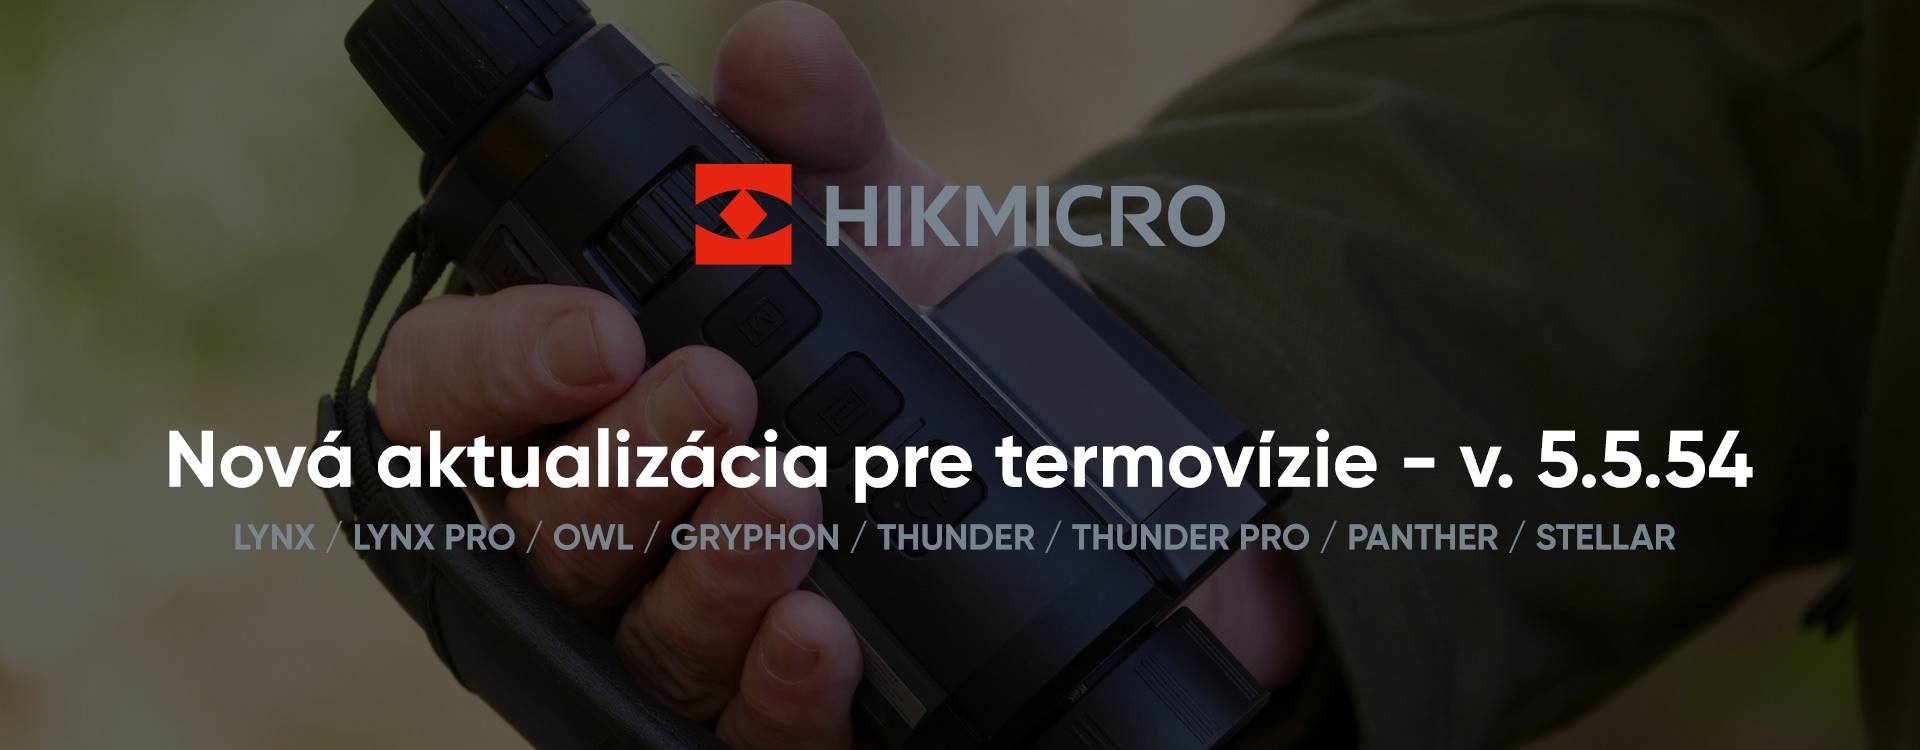 Nová aktualizácia pre termovízie HIKMICRO - v. 5.5.54